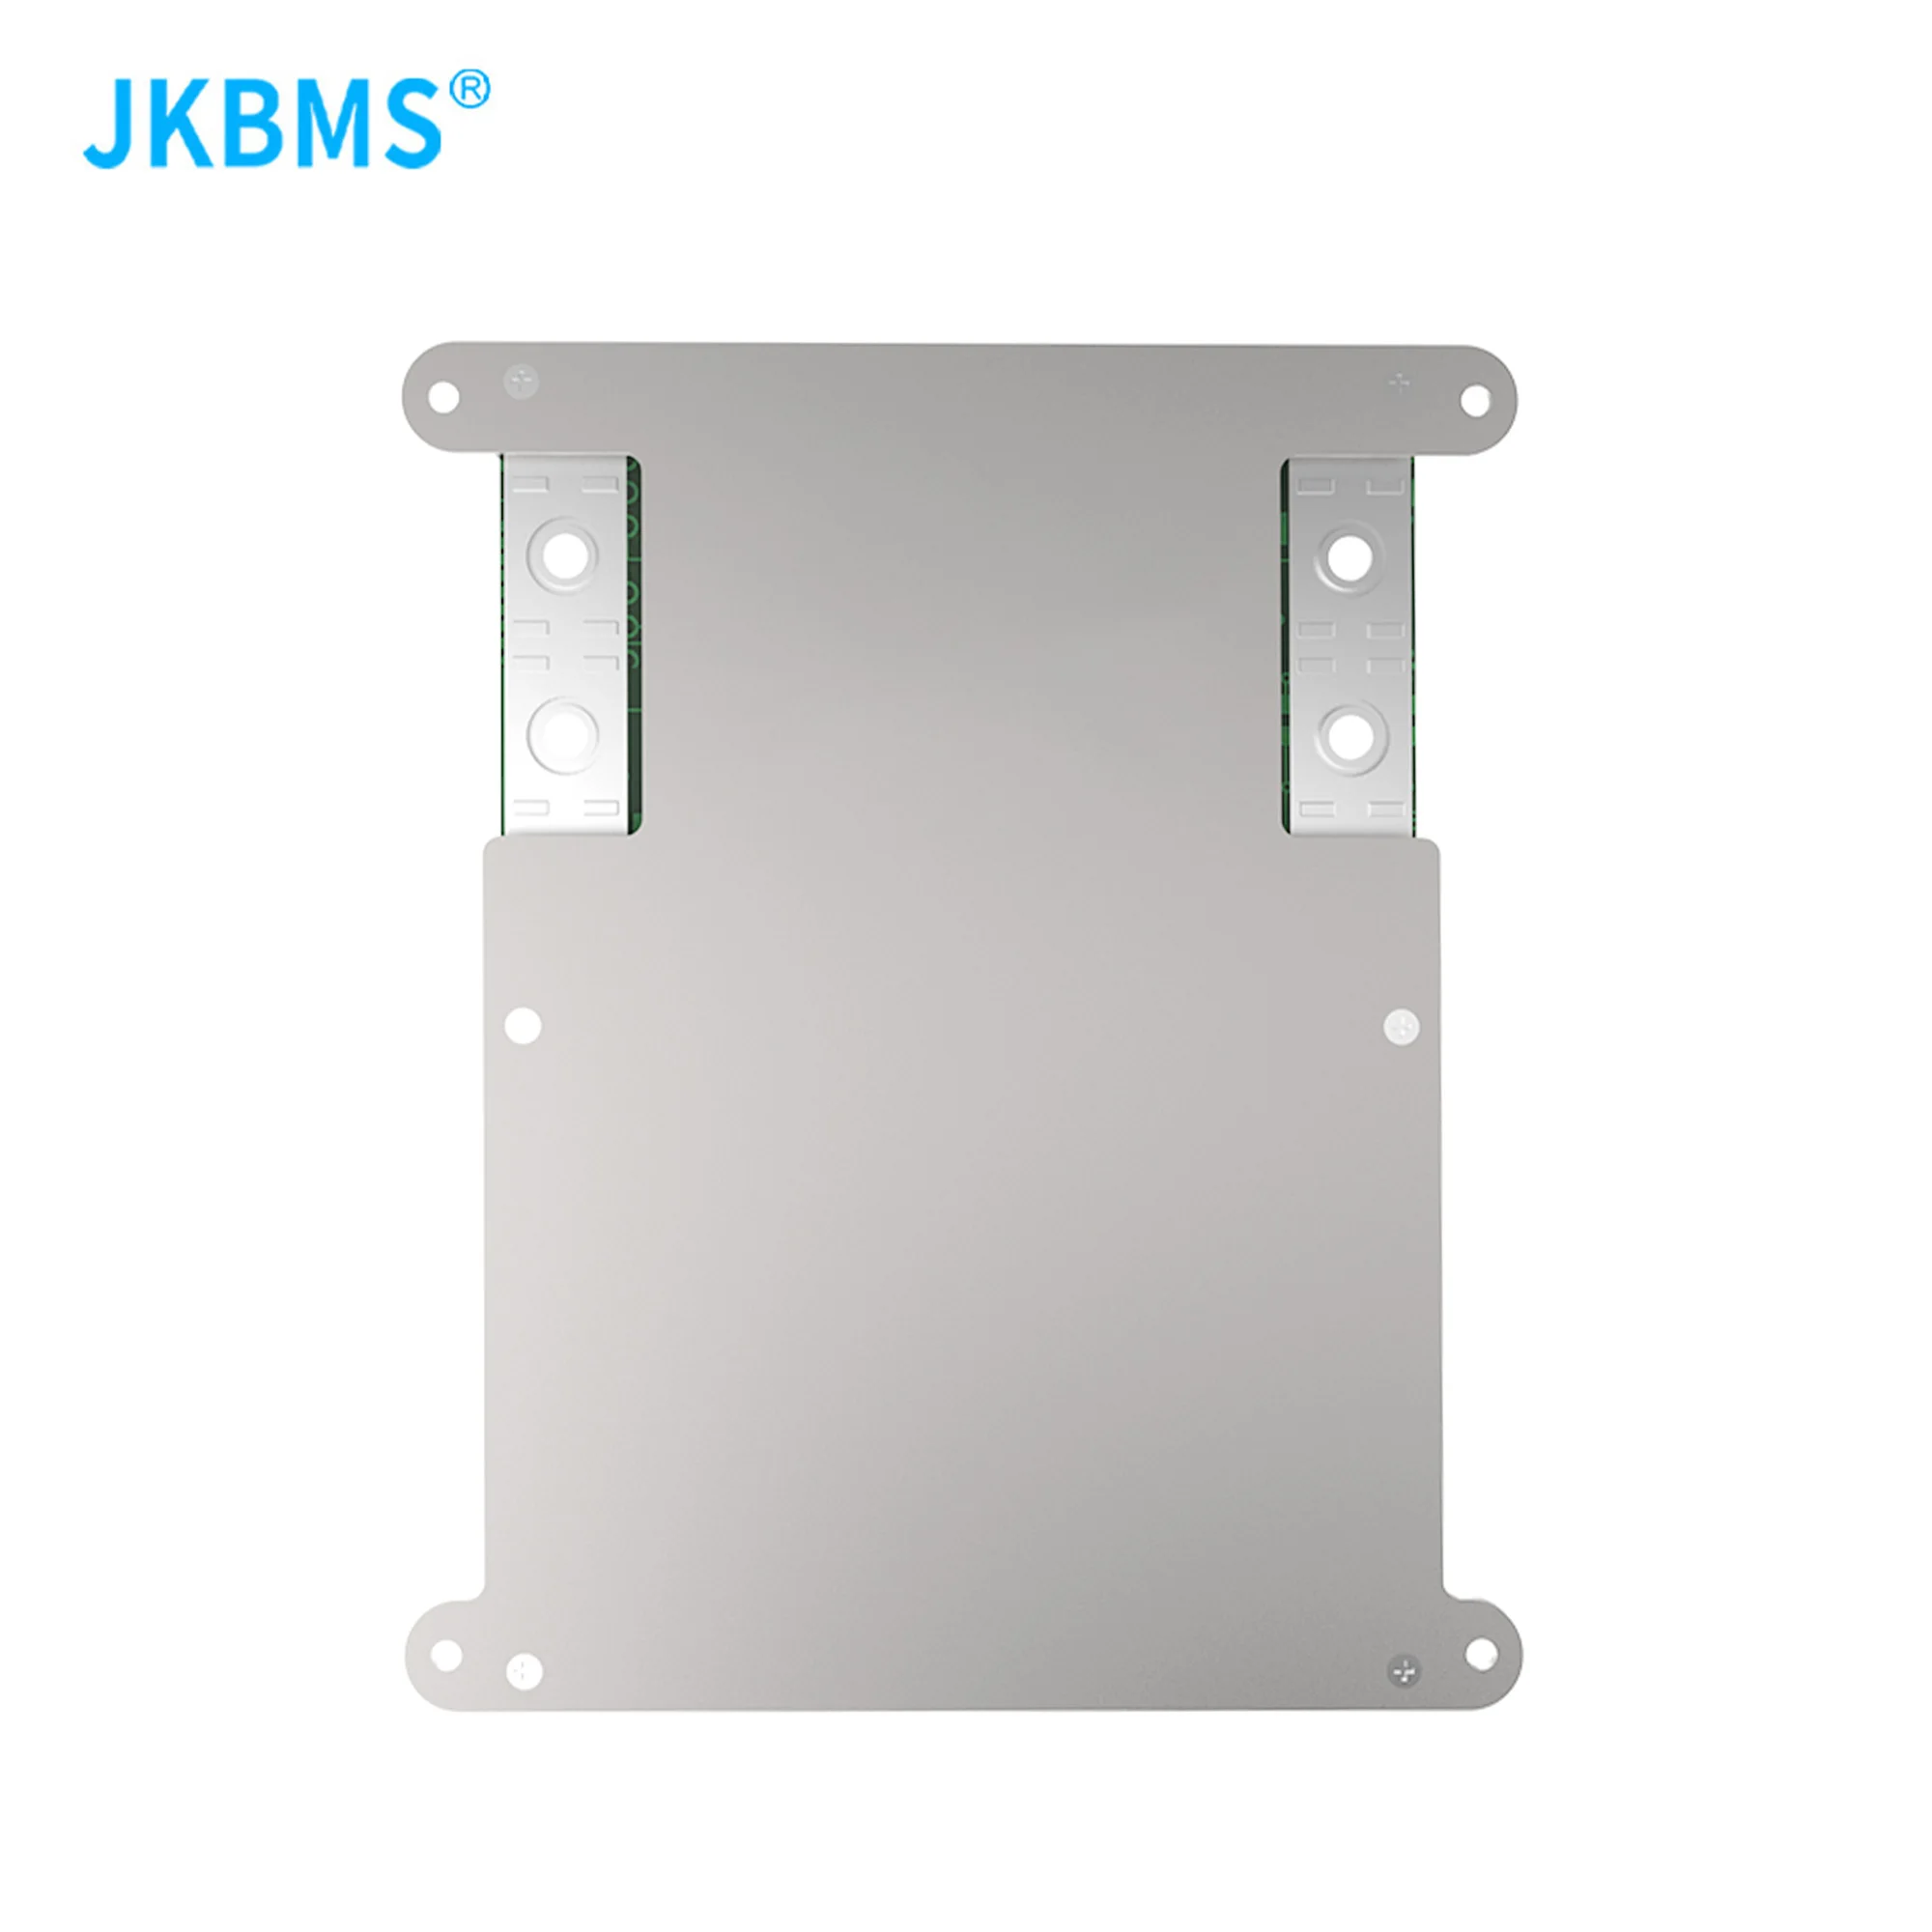 JKBMS-Batterie BMS intelligente avec pipeline, 4S, 5S, 6S, 7S, 8S, 12V, 24V, équilibre actif, chaleur, piles